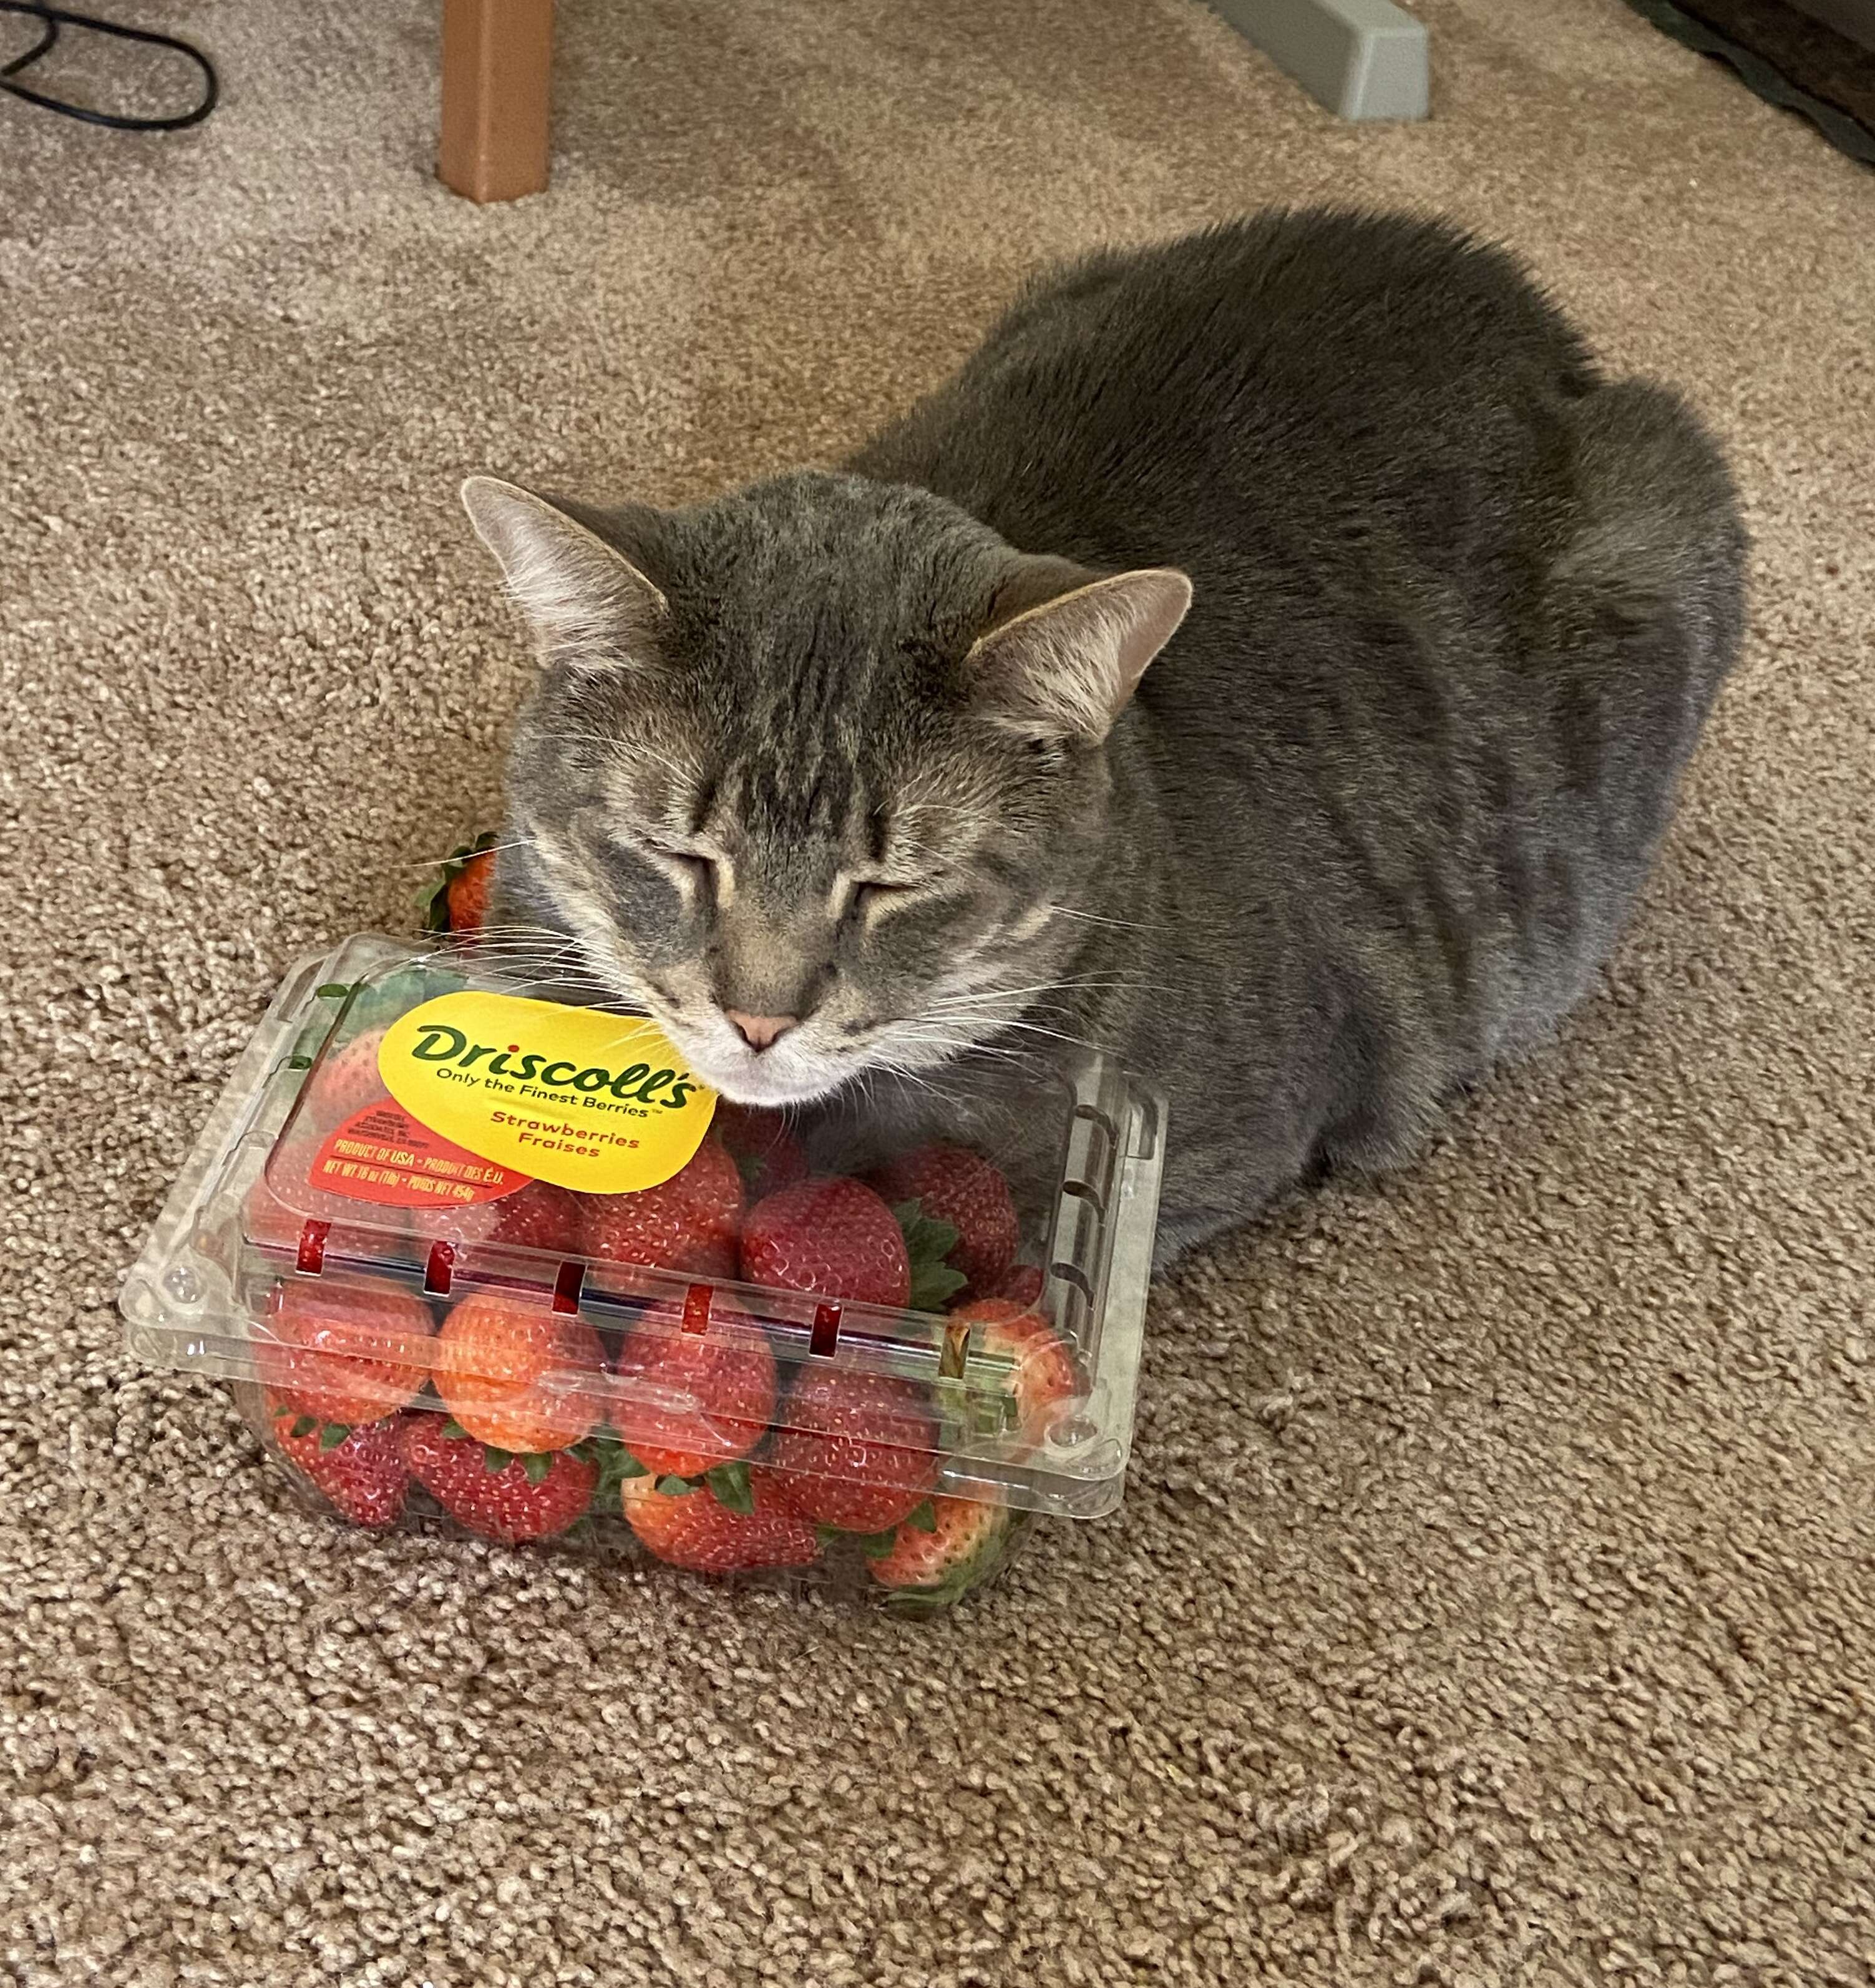 Cat snuggles strawberries